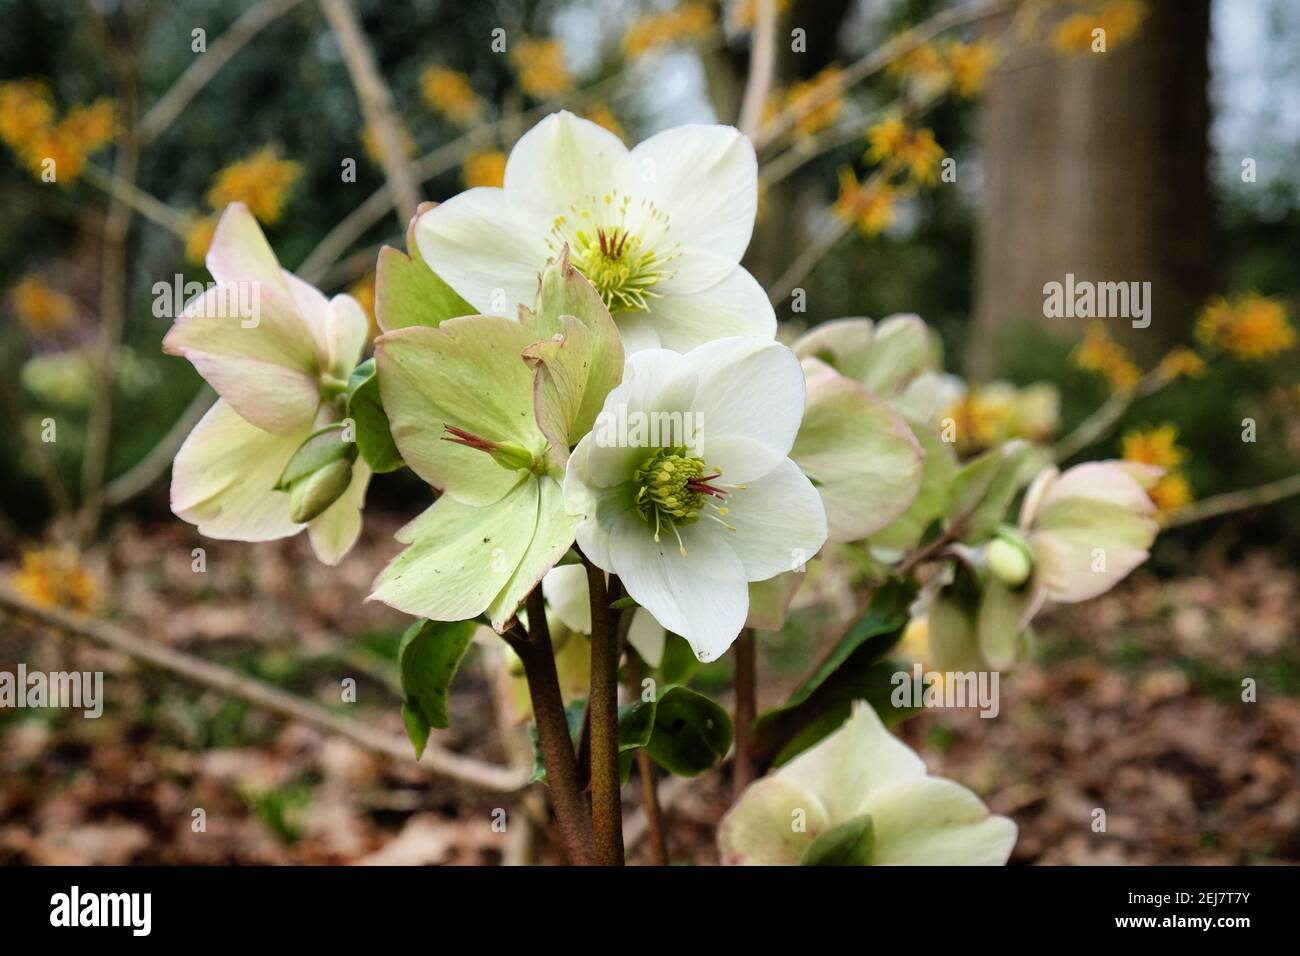 White Hellebores, 'Ice N Roses White' or lenten rose, in flower Stock Photo